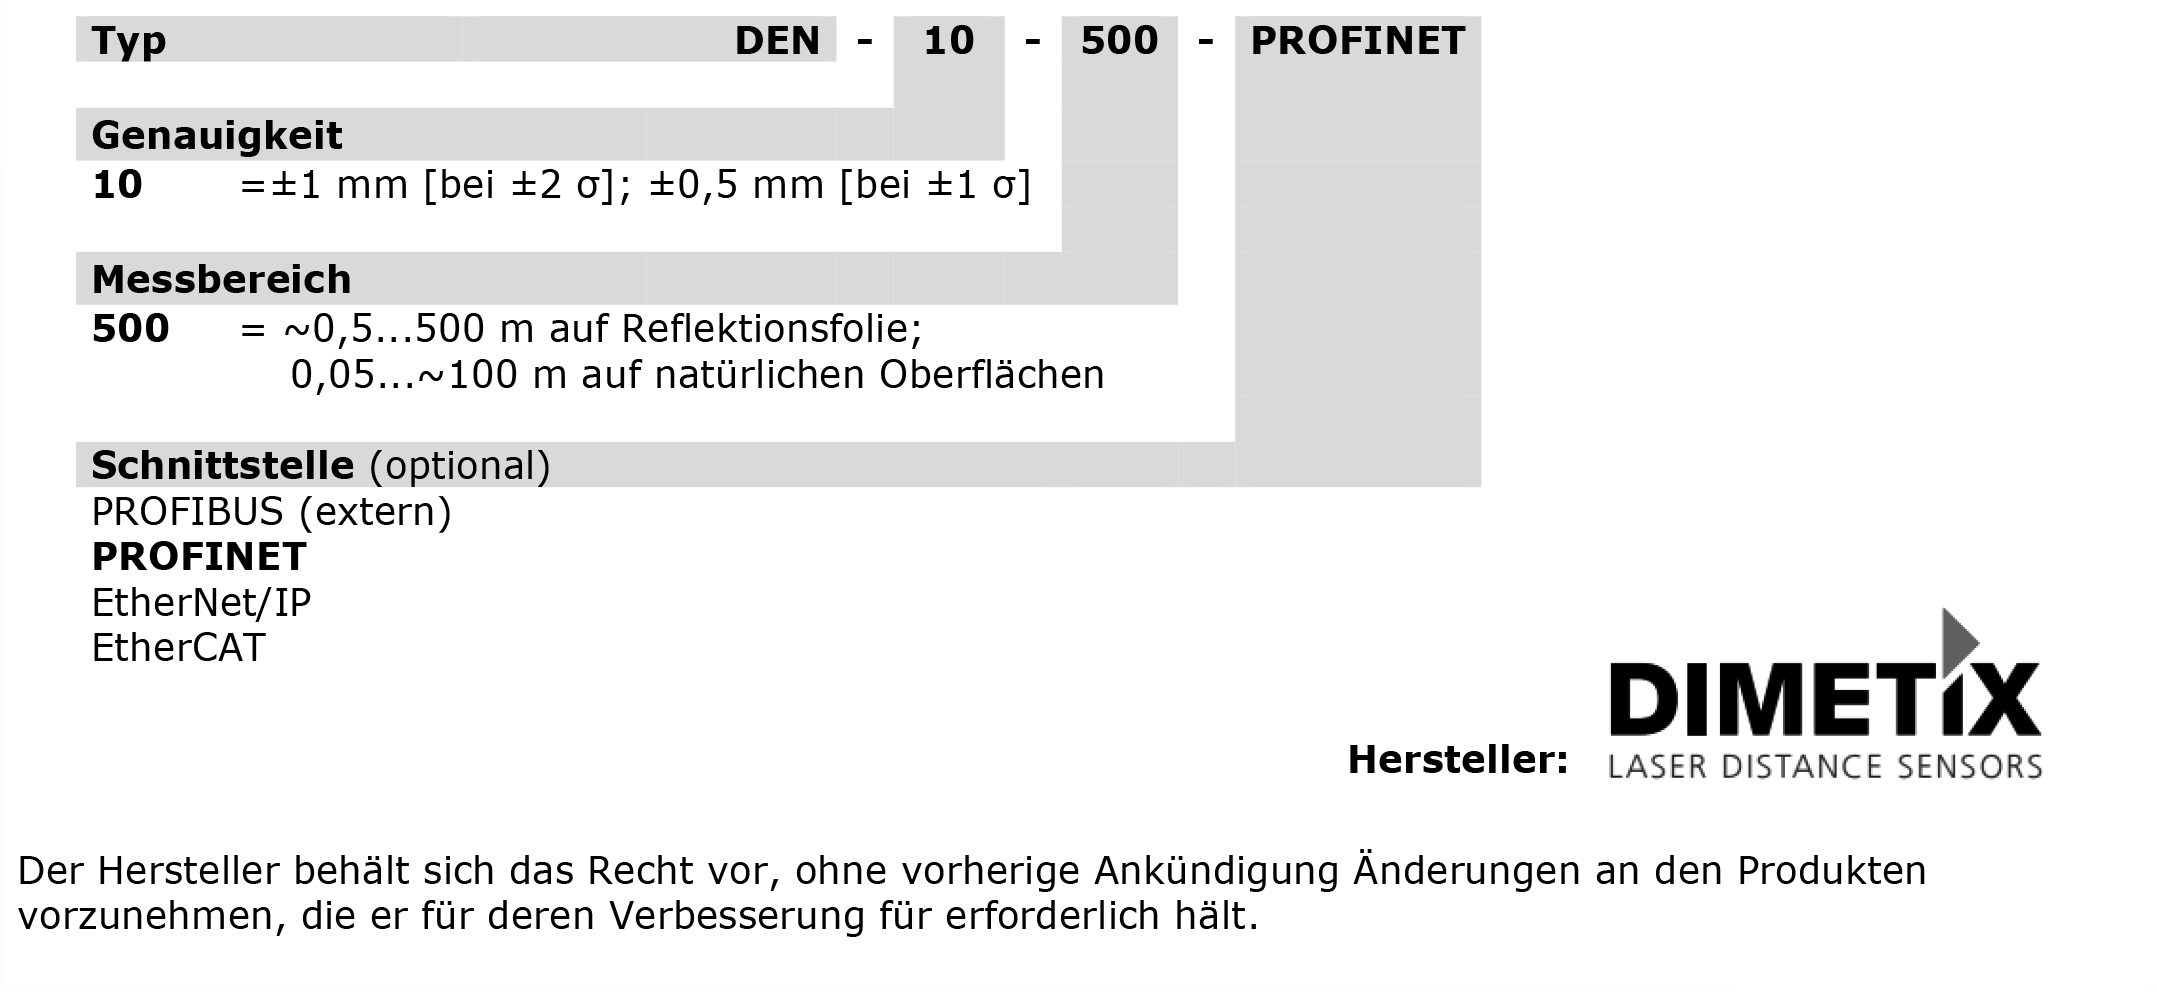 Bestellschluessel_DEN-10-500